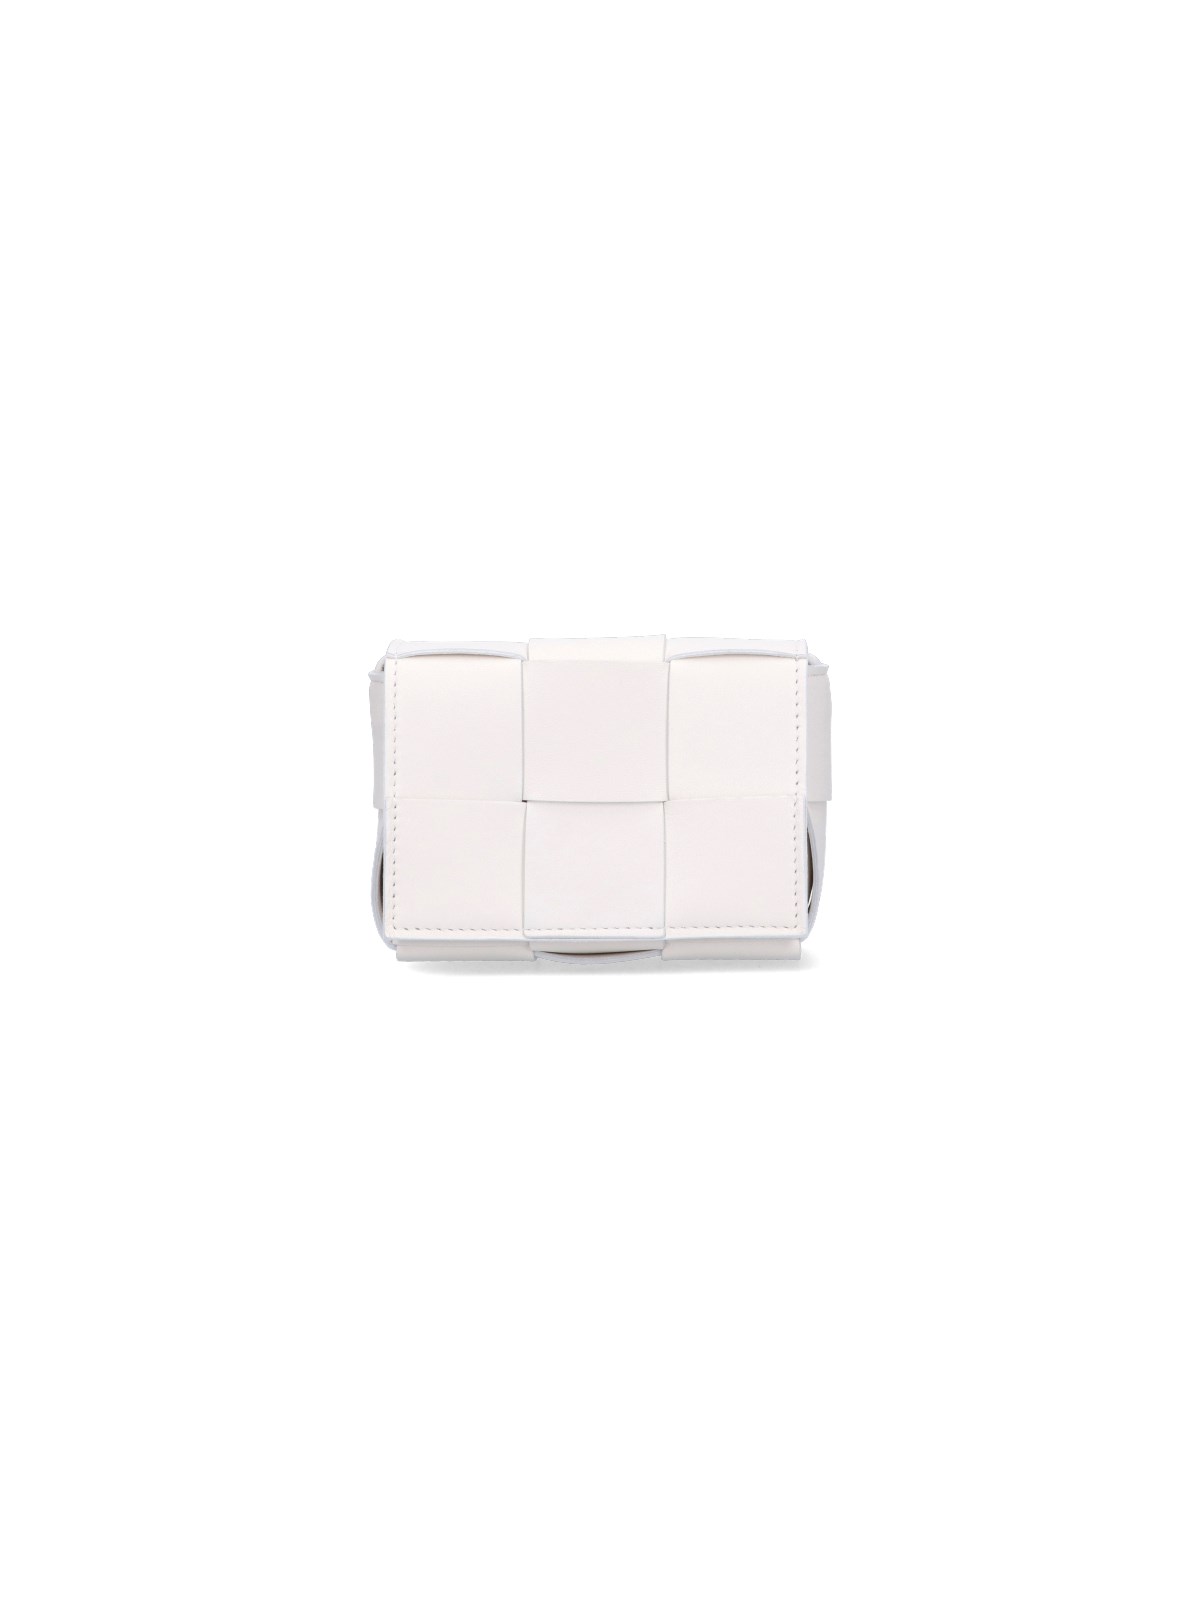 Bottega Veneta 'intrecciato' Mini Bag In White